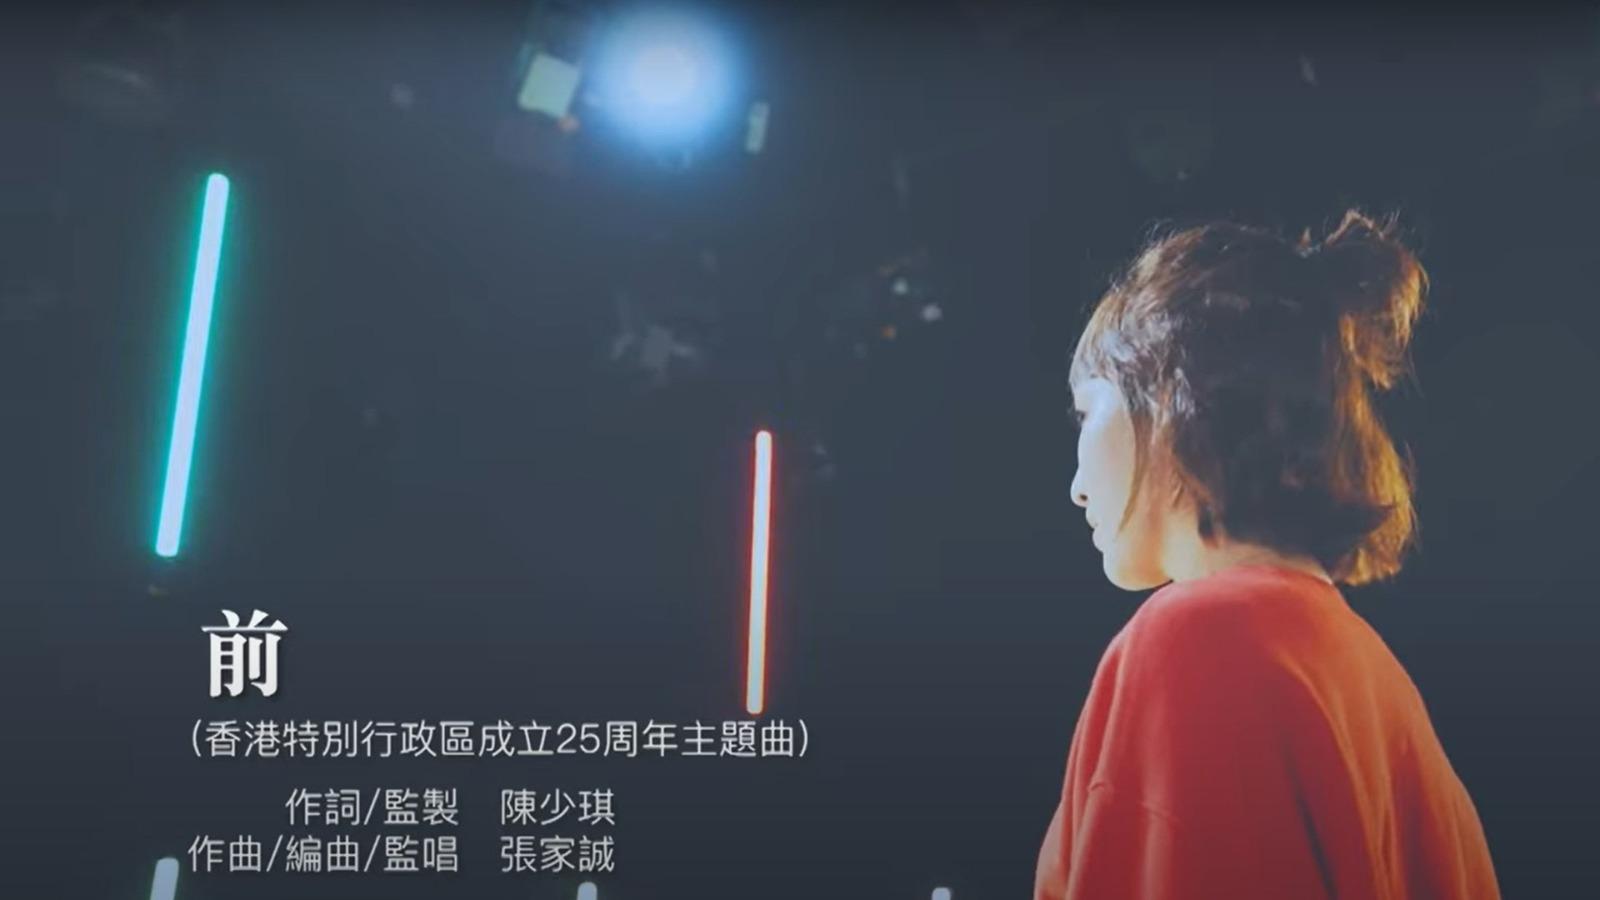 香港特別行政區成立廿五周年主題曲《前》- 《新時代奮鬥者》跳舞版